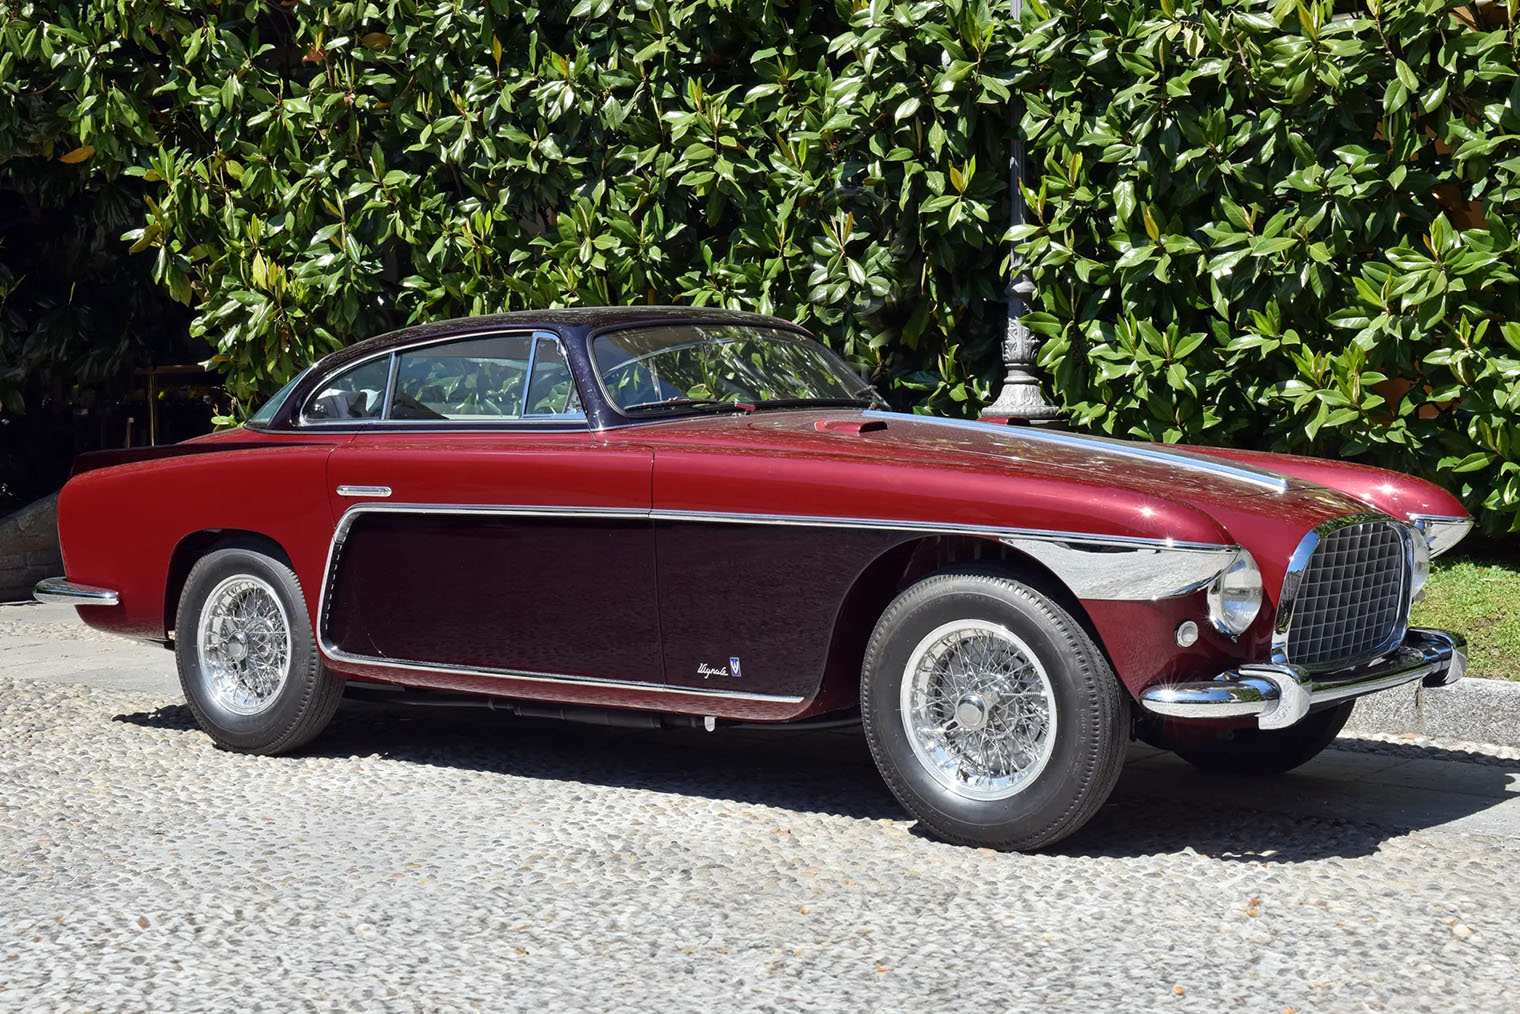 Ferrari 250 Europa Coupe был построен специально для участия в Парижском автосалоне 1953 года. Это одна из трех машин с экспериментальным кузовом разработки ателье Vignale. Источник: rmsothebys.com